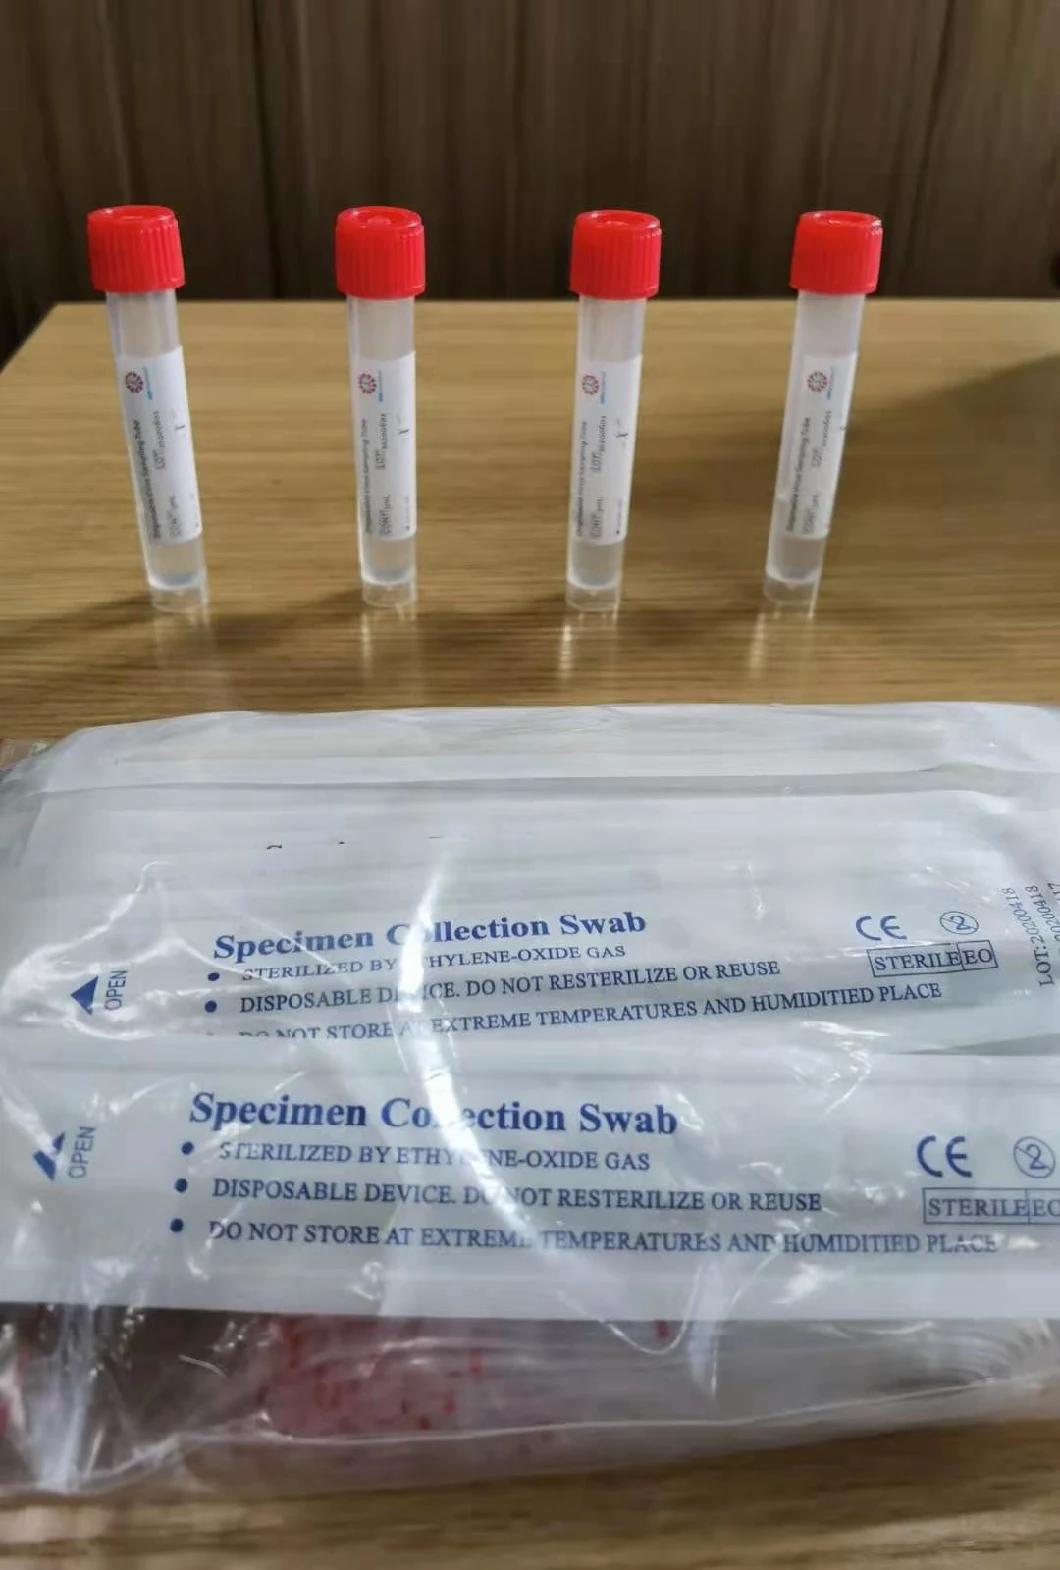 Virus Transport Medium Flocked Swab Kit Disposable Virus Sampling Tube Vtm Kit Utm Tube